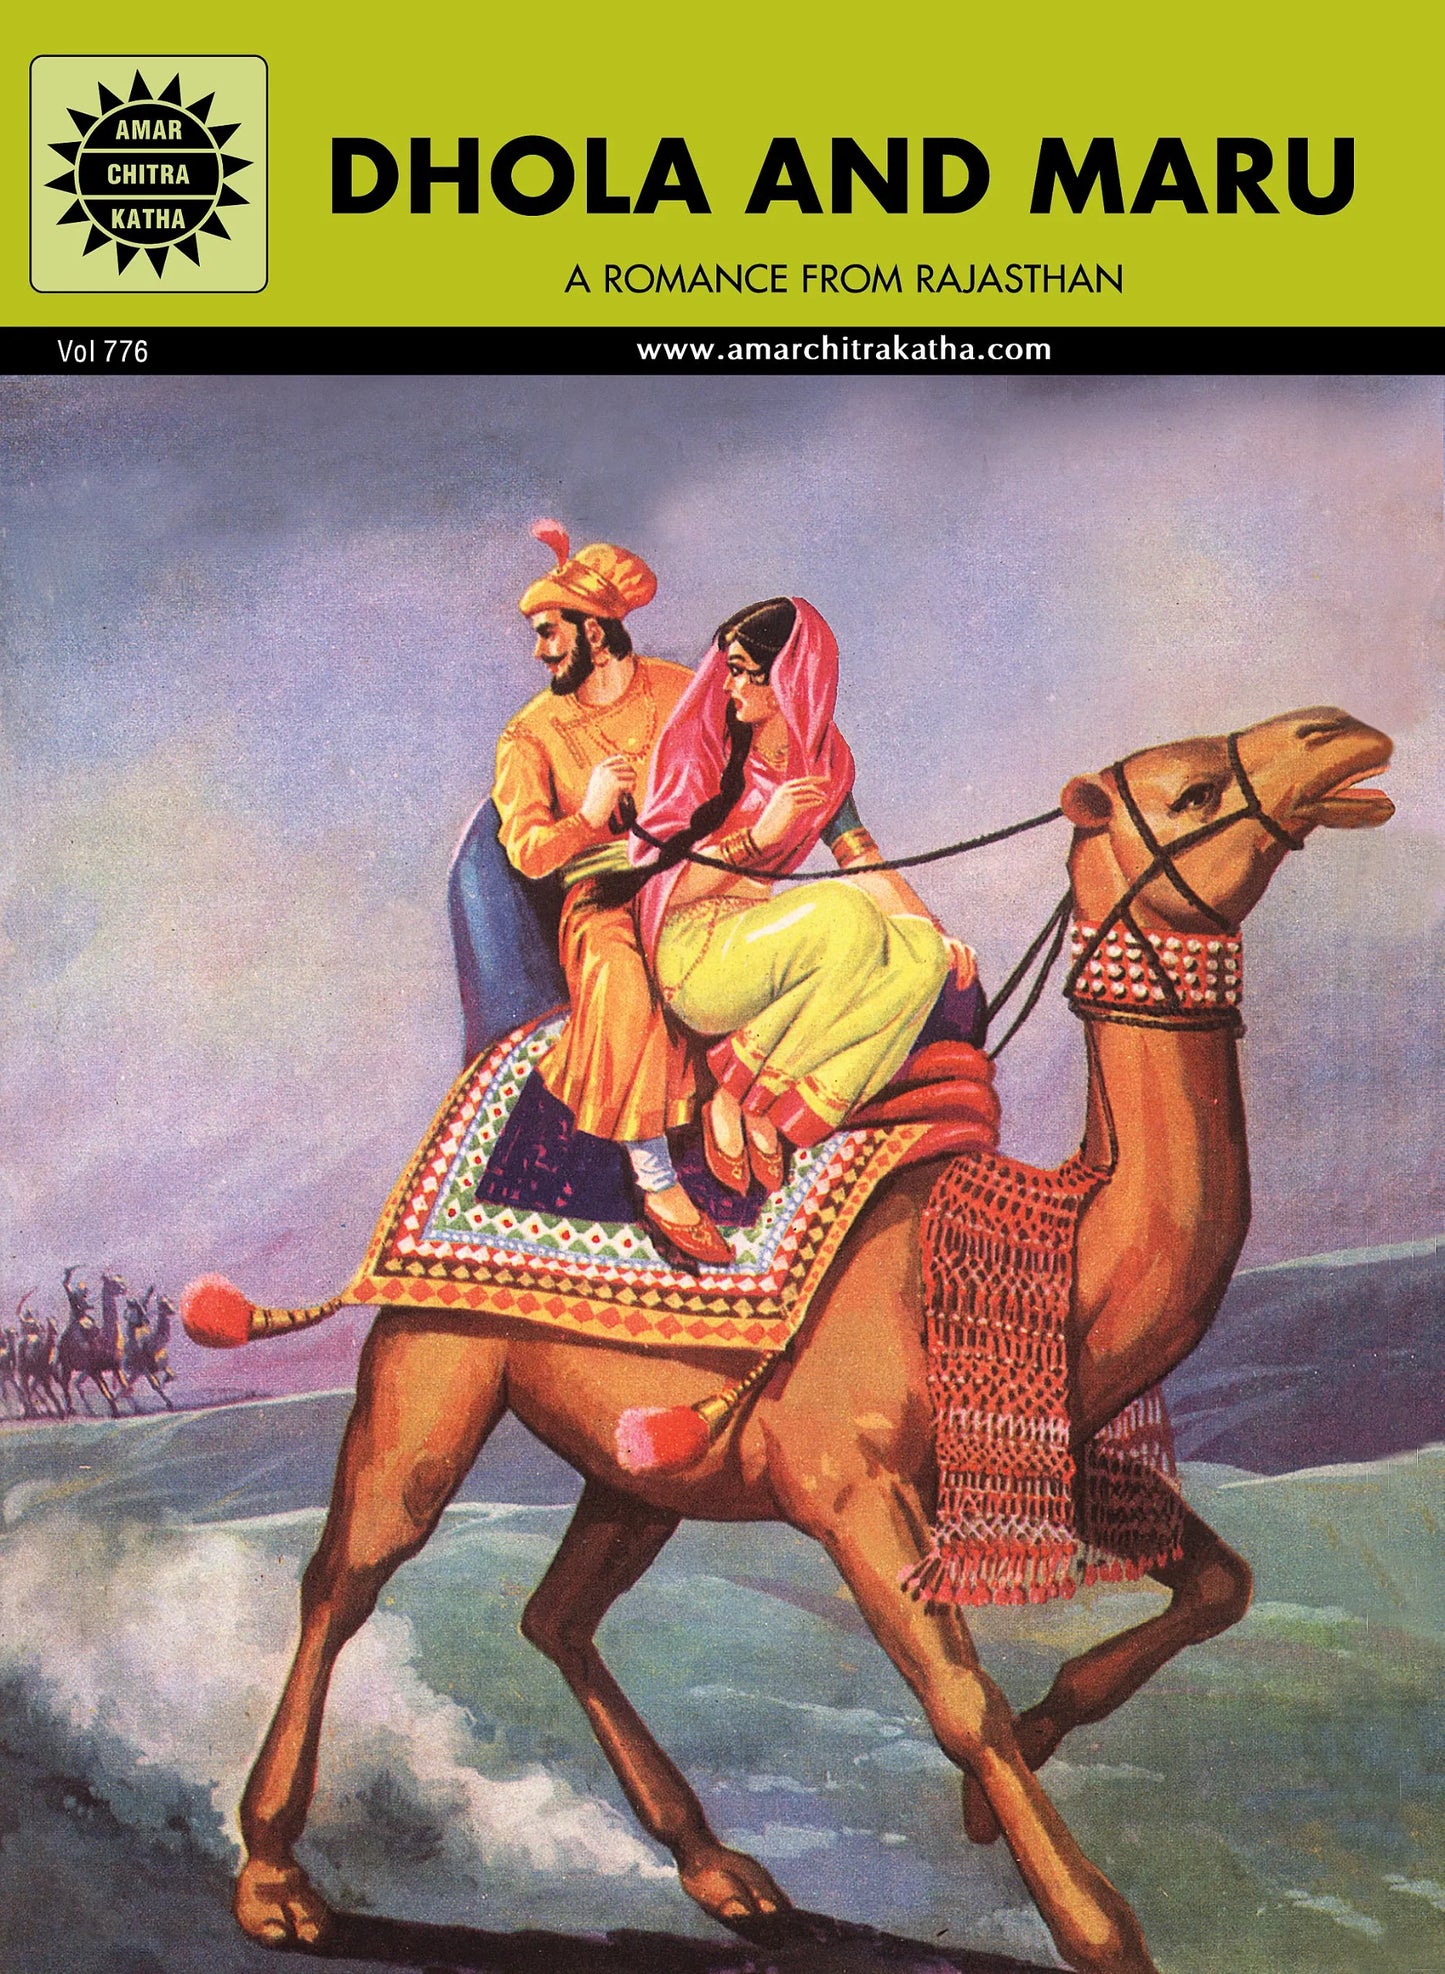 Amar Chitra Katha - Dhola And Maru - A Romance from Rajasthan